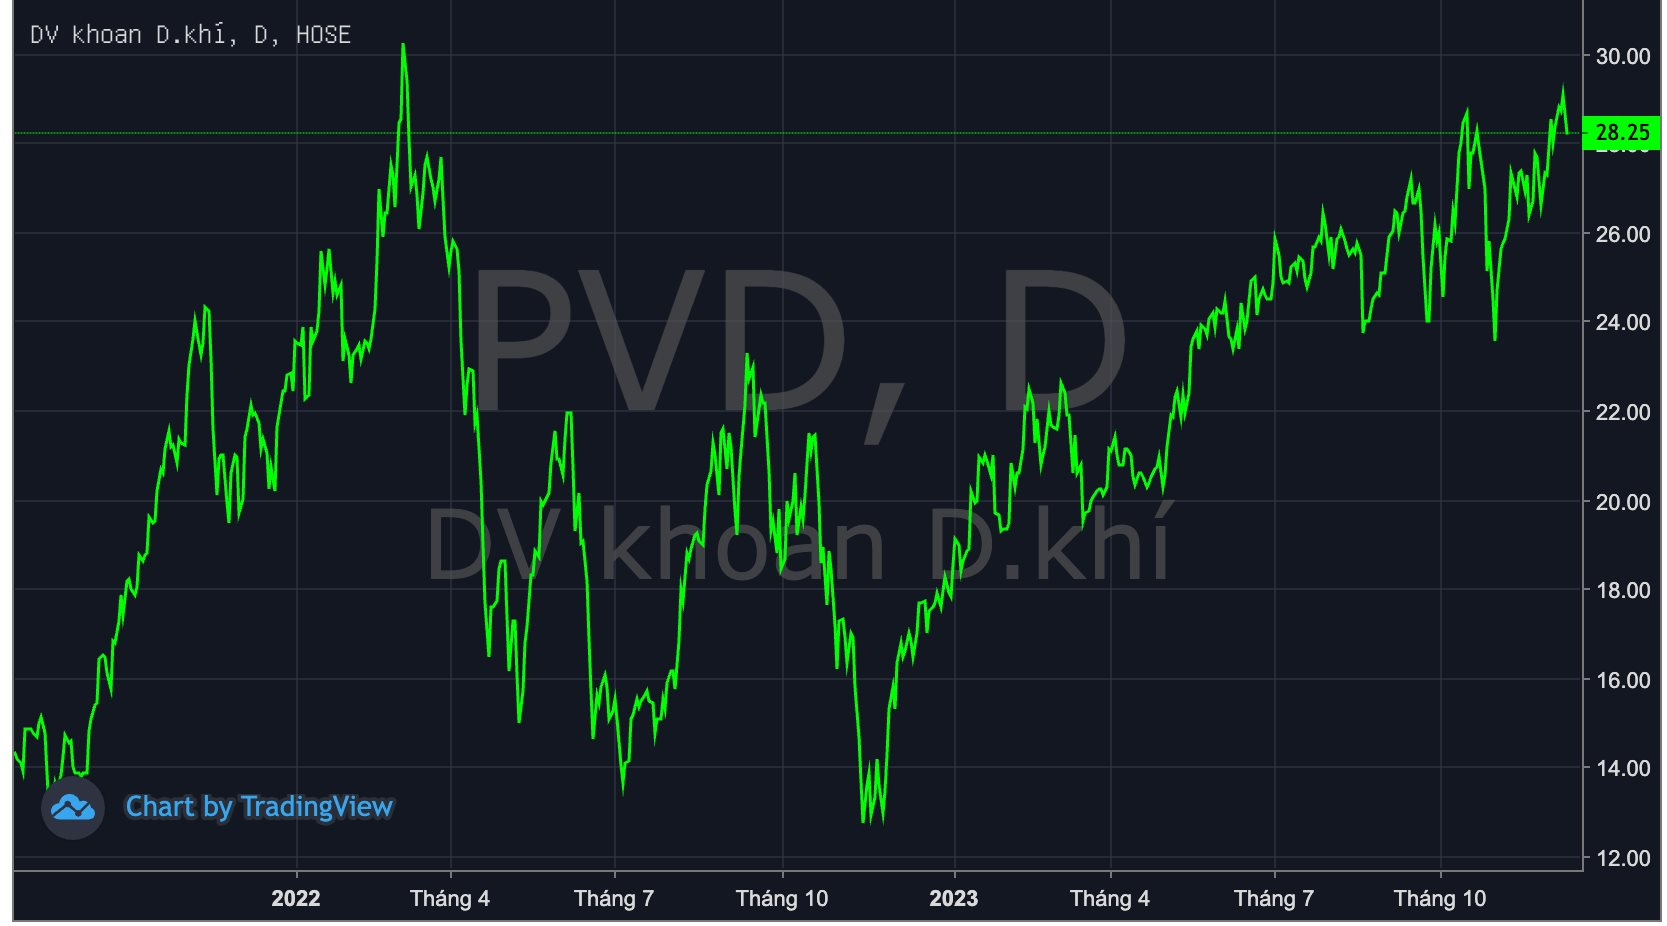 Giá cho thuê giàn khoan neo cao kỷ lục, PVD được dự báo lãi nghìn tỷ trong năm 2024, cổ phiếu &quot;lầm lũi&quot; lên đỉnh - Ảnh 1.